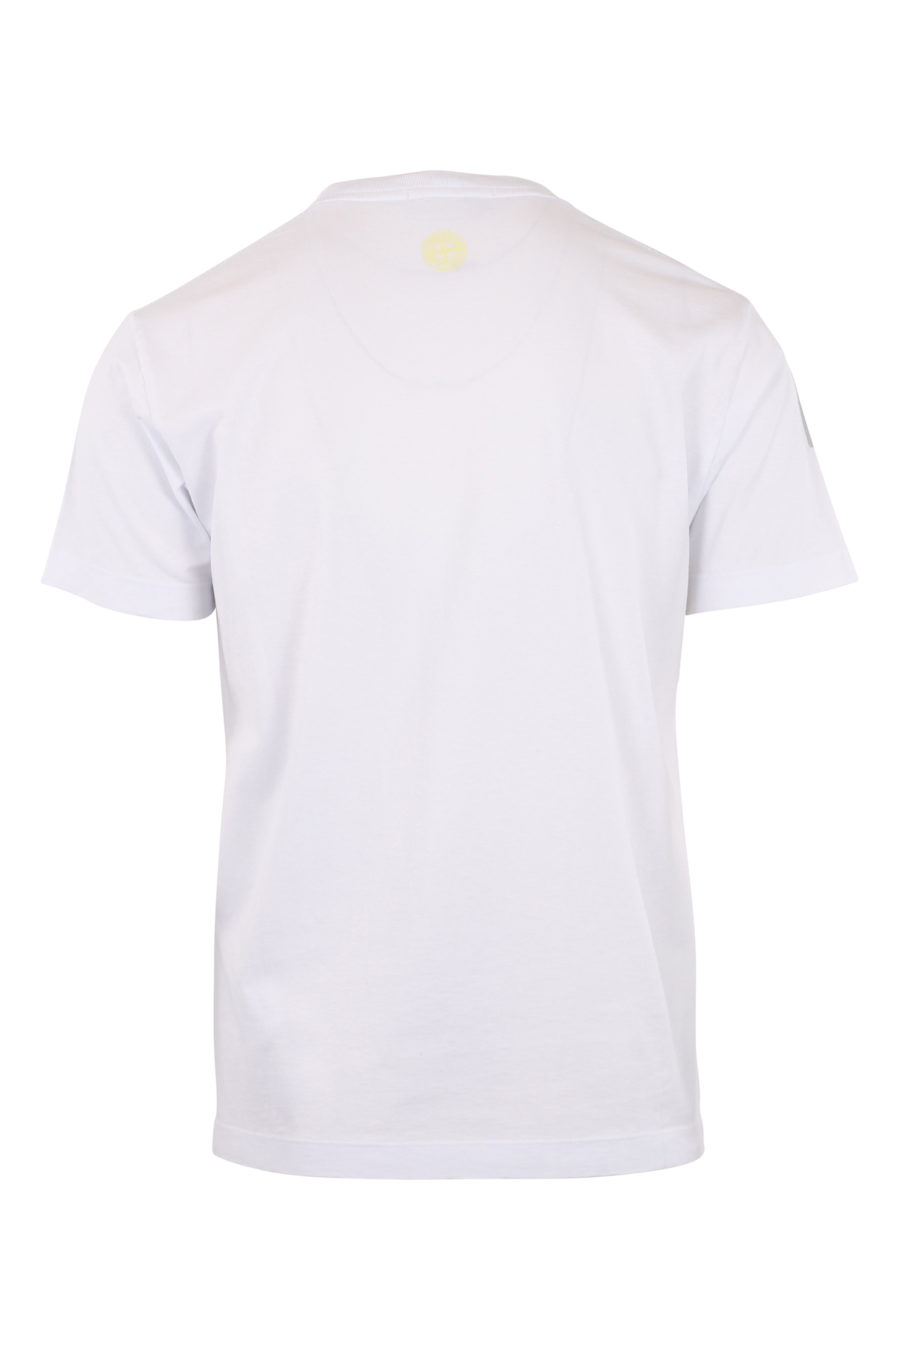 Camiseta blanca con logo distorsionado amarillo y verde - IMG 9644